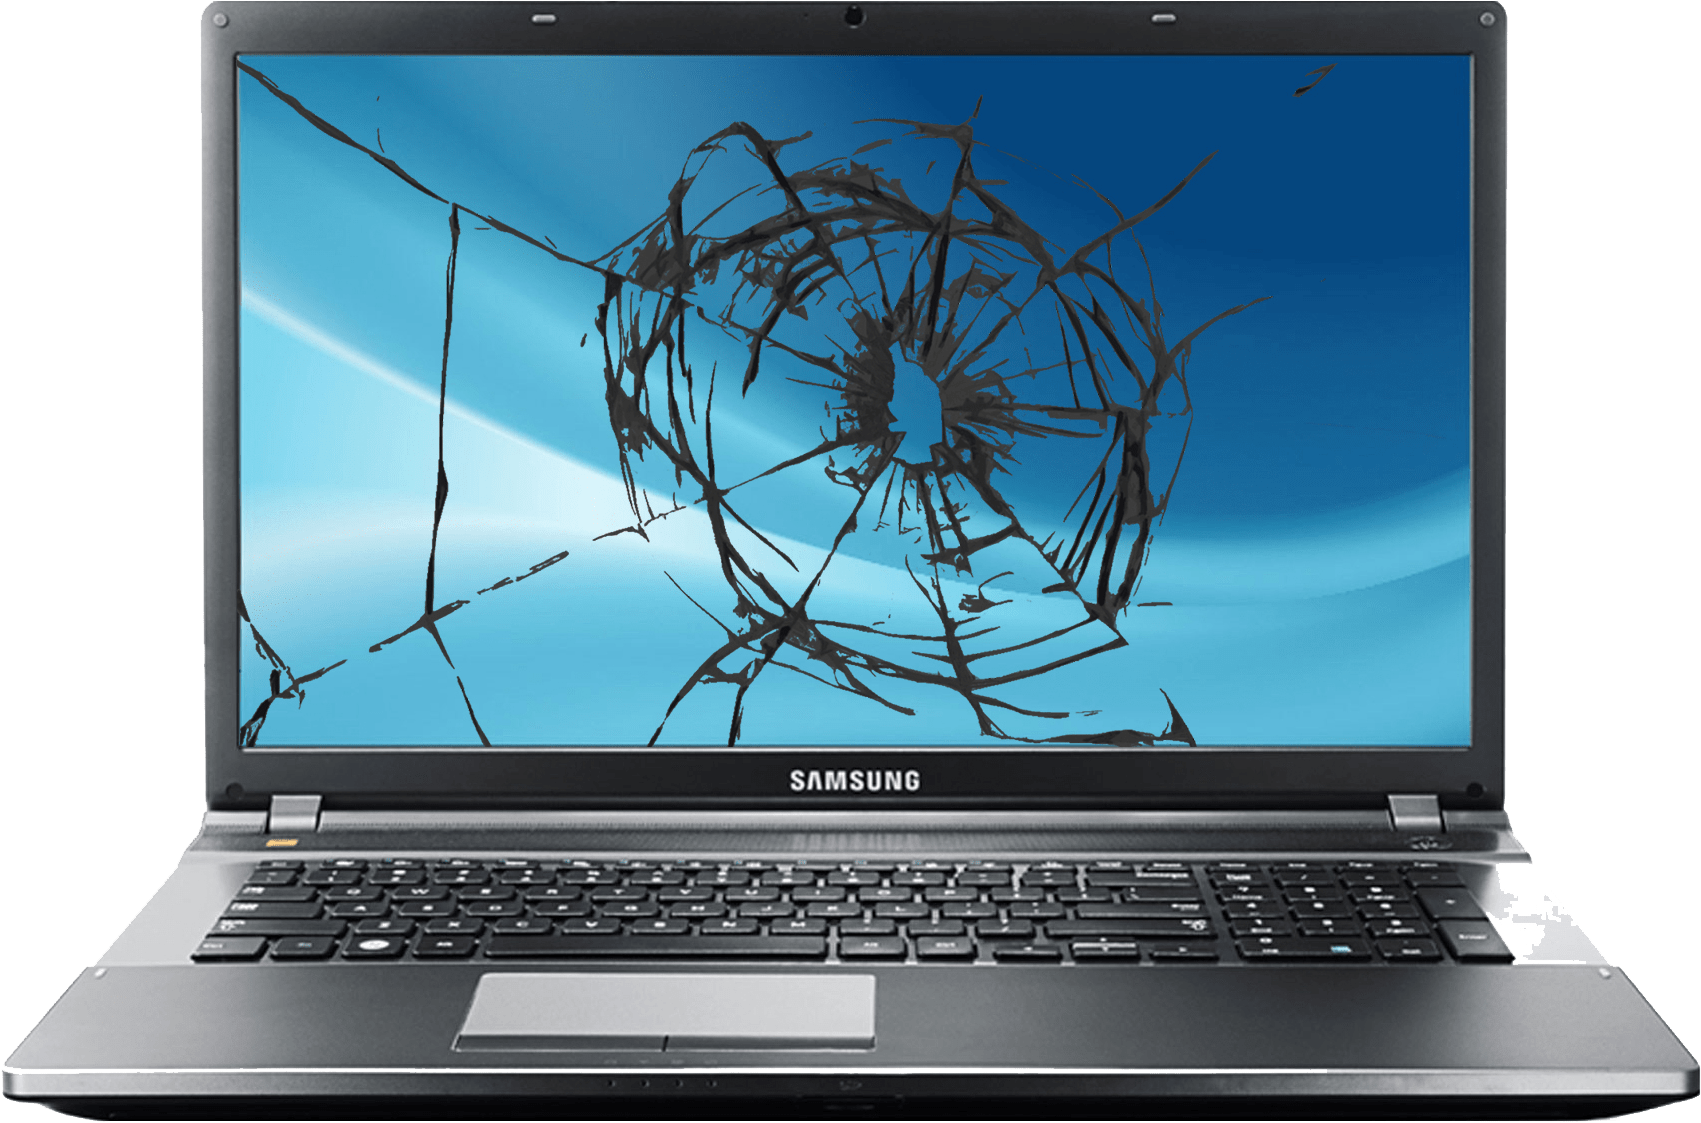 Damaged Laptop Screen